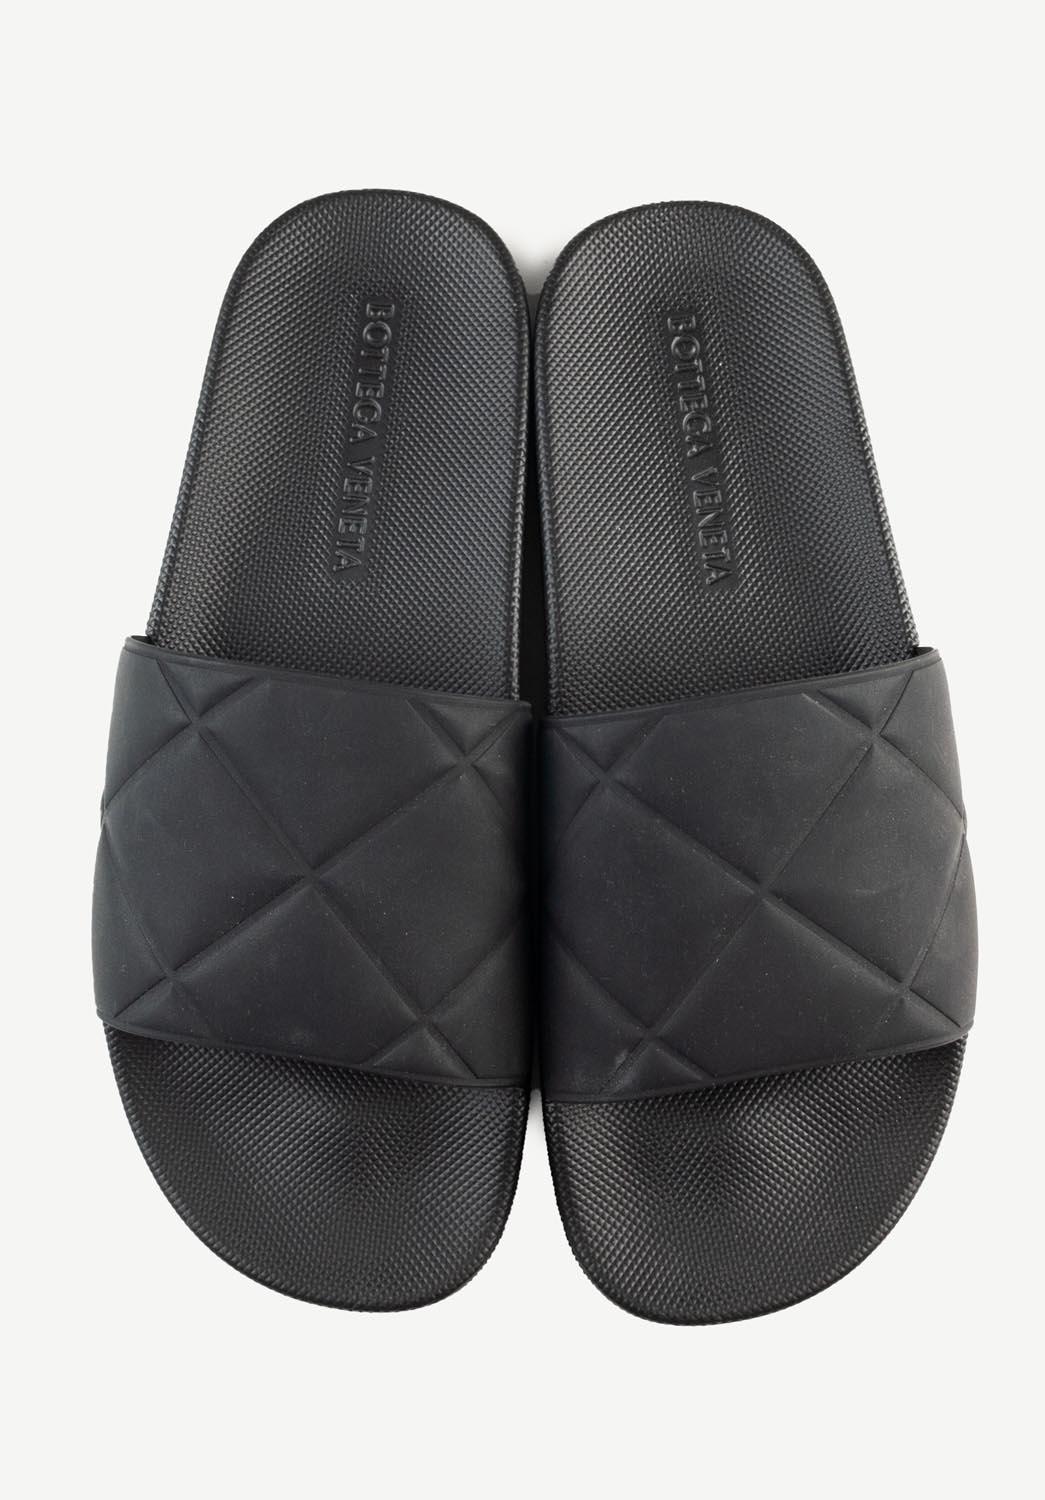 Zapatillas para hombre 100% originales Bottega Veneta, Nocode
Color: negro
(El color real puede variar un poco debido a la interpretación individual de la pantalla del ordenador)
Material: caucho
Talla de la etiqueta: EUR40, USA7, UK6
Estos zapatos